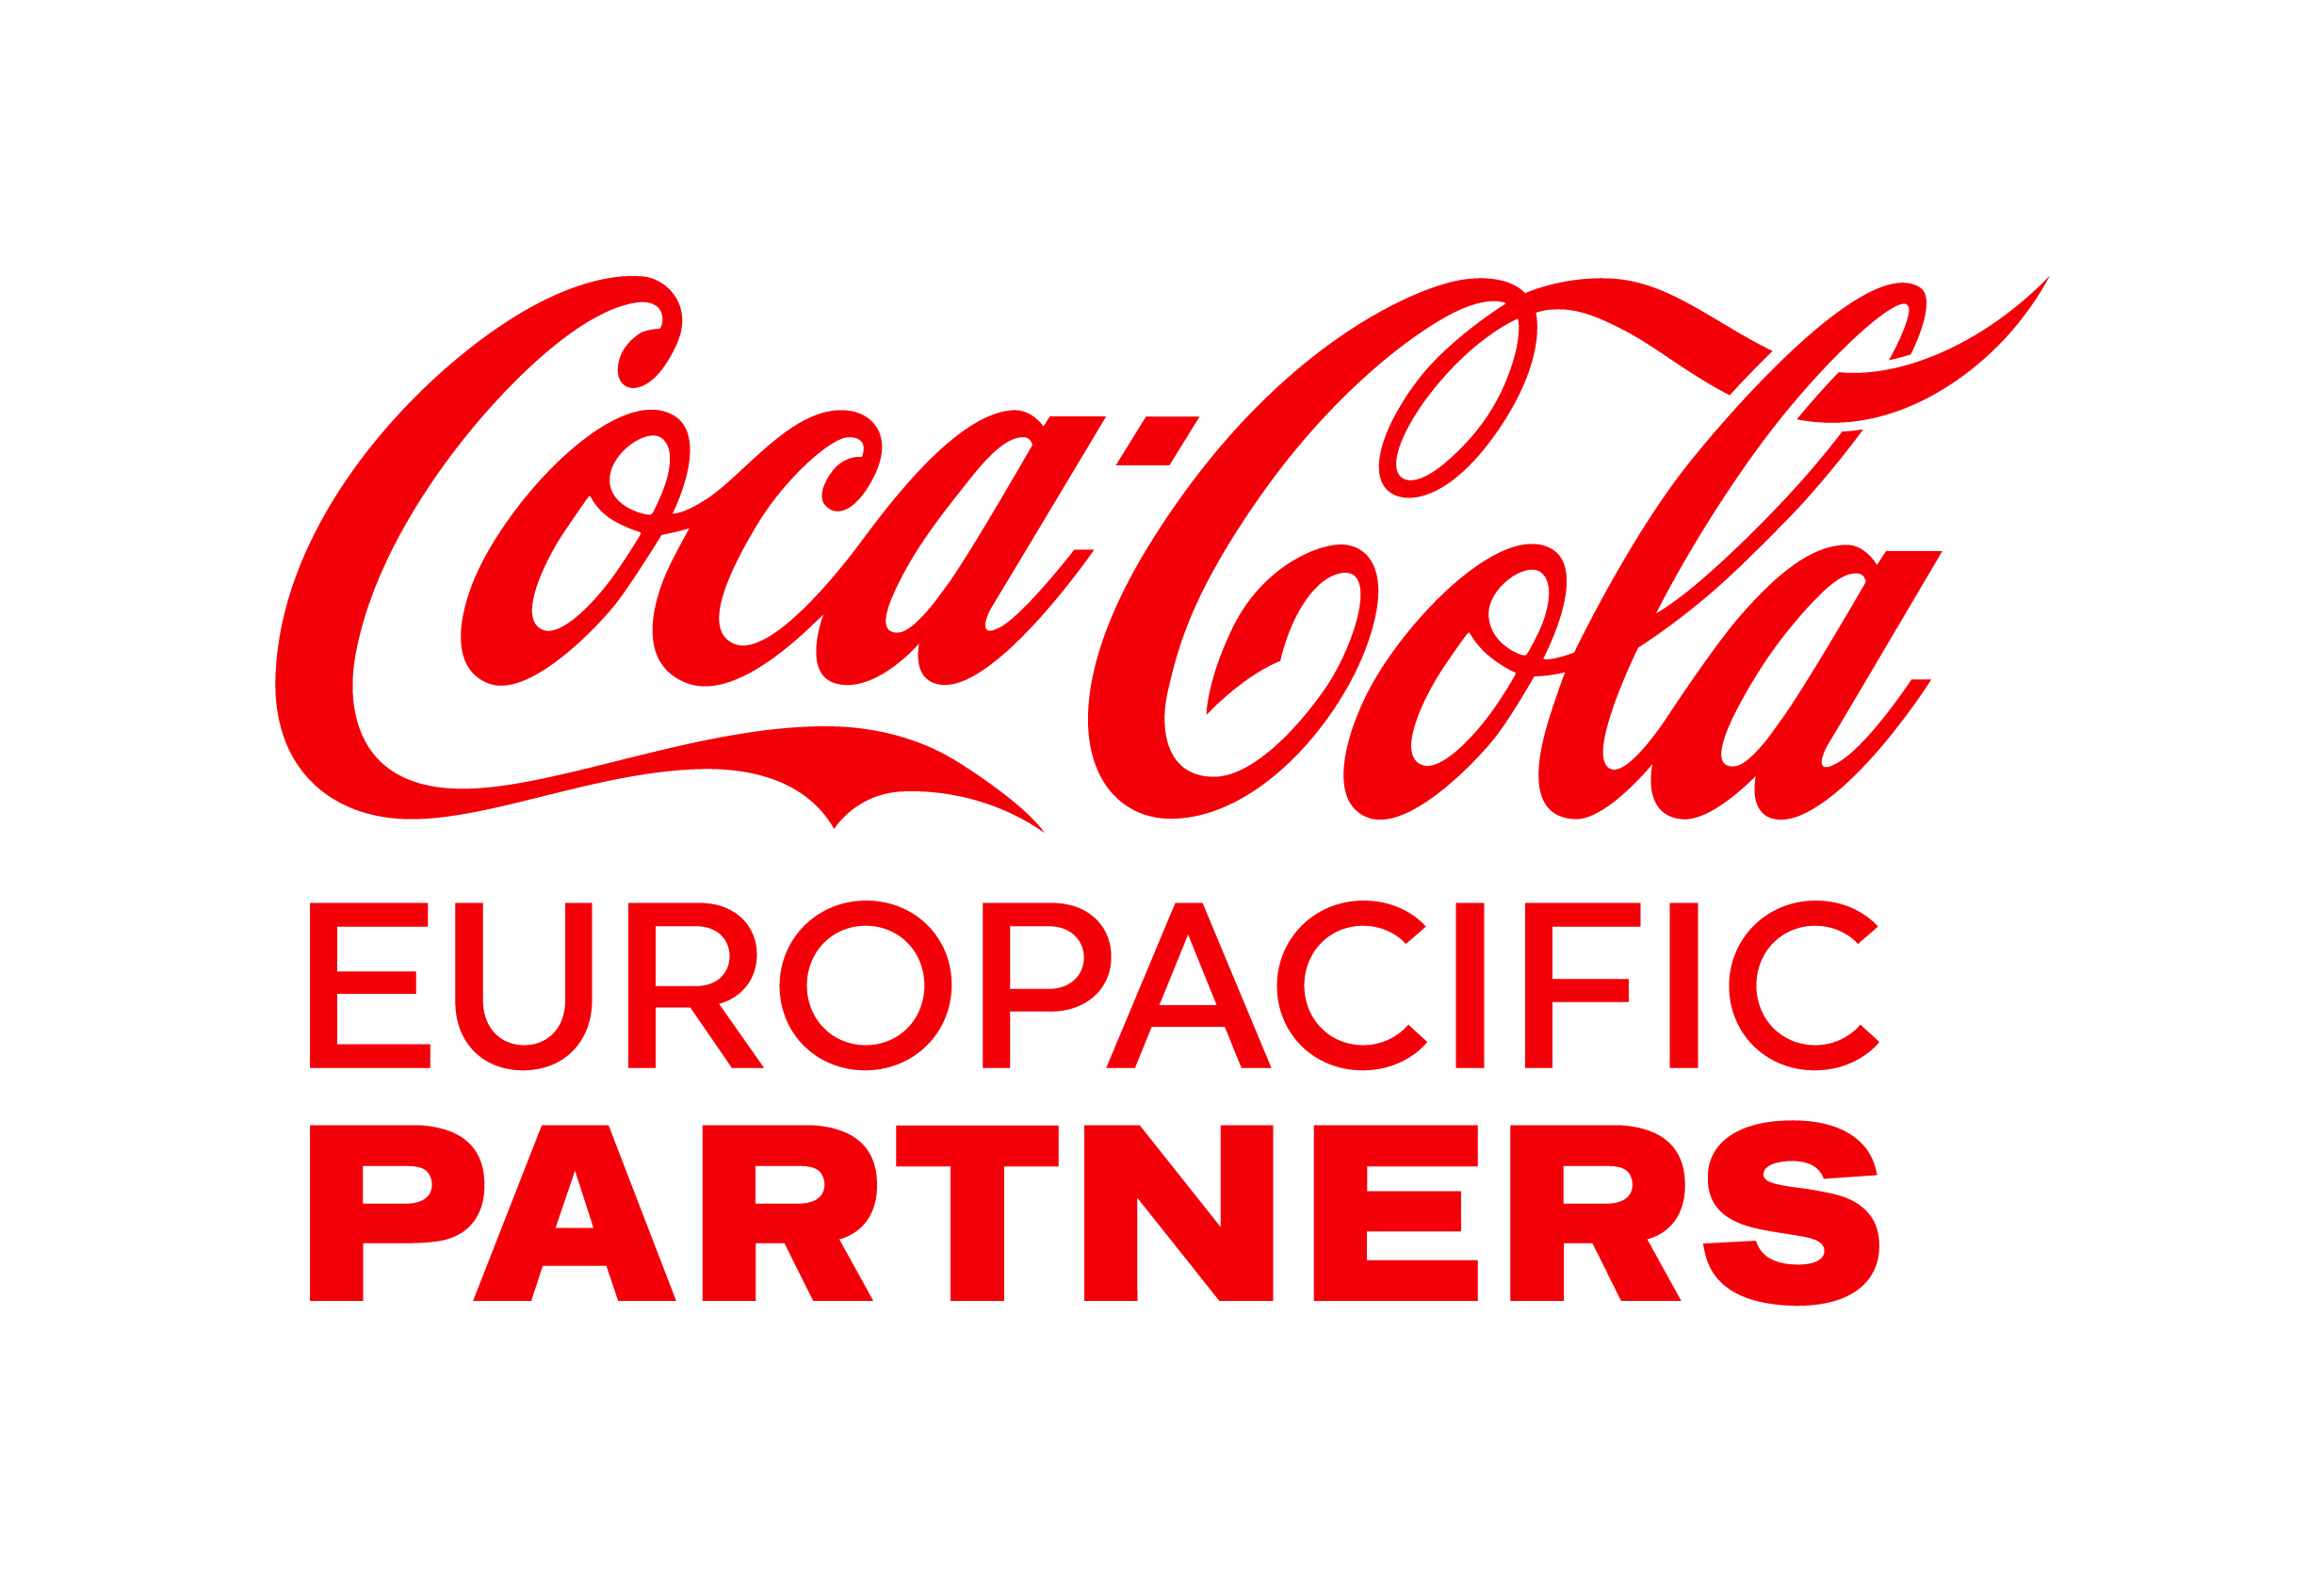 cceuropacificp_logo1.jpg